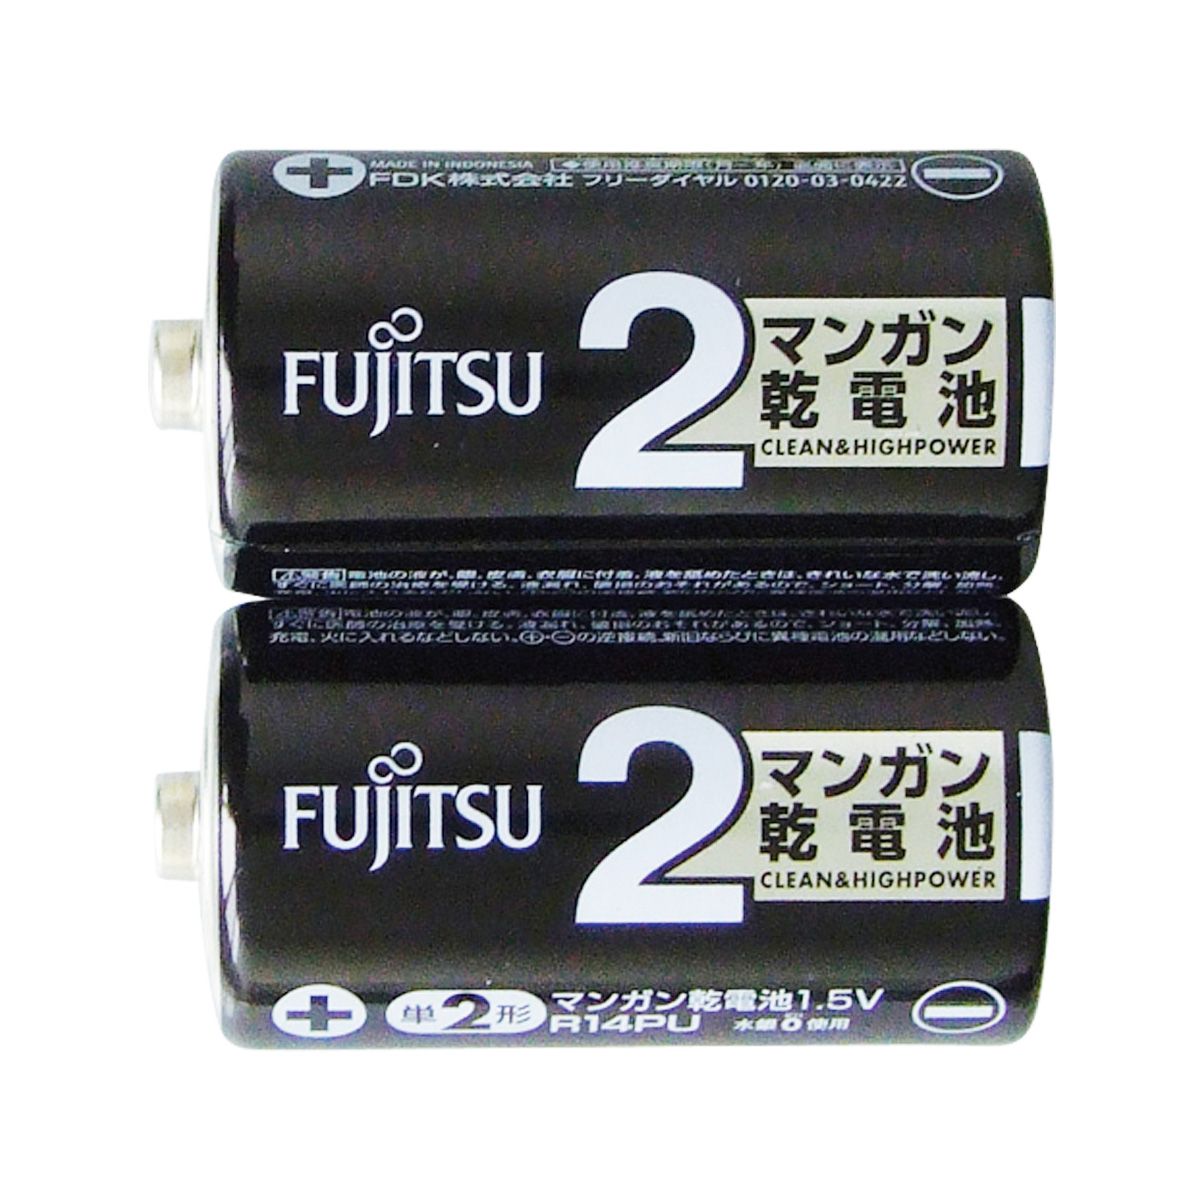 富士通 黒マンガン乾電池単2 2P 362214